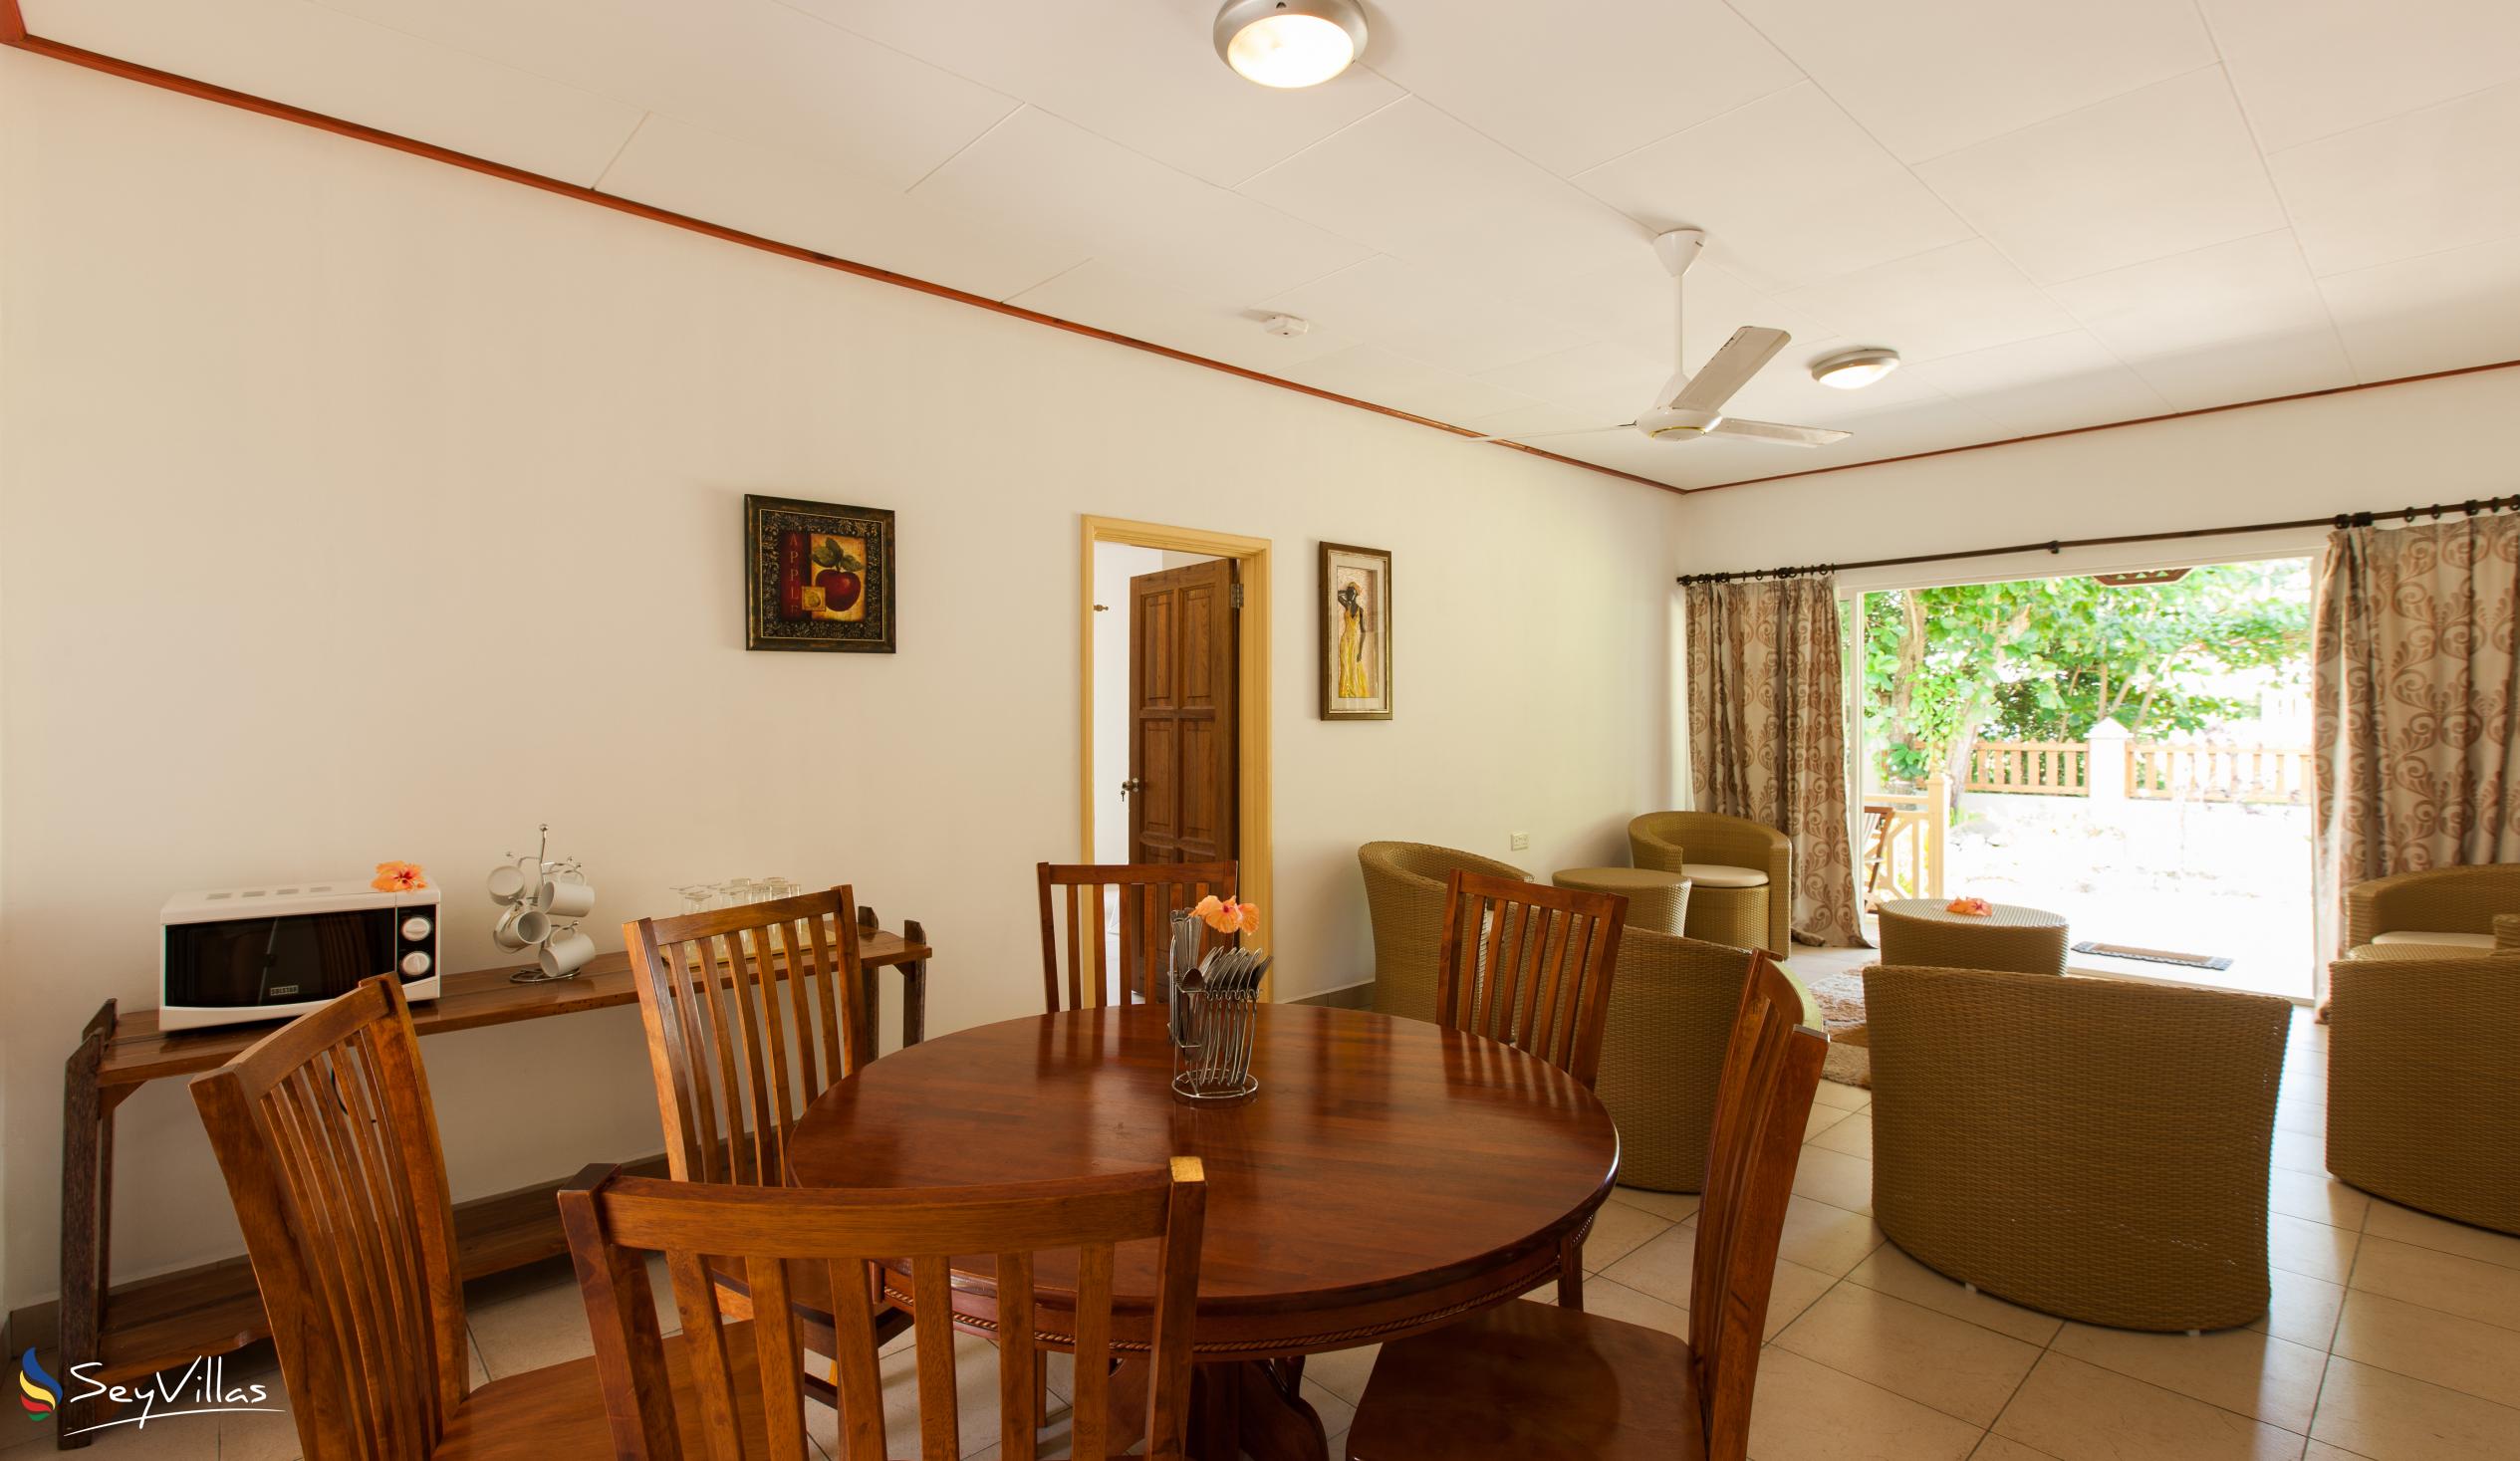 Foto 8: Hostellerie La Digue - Chalet 3 chambres - La Digue (Seychelles)